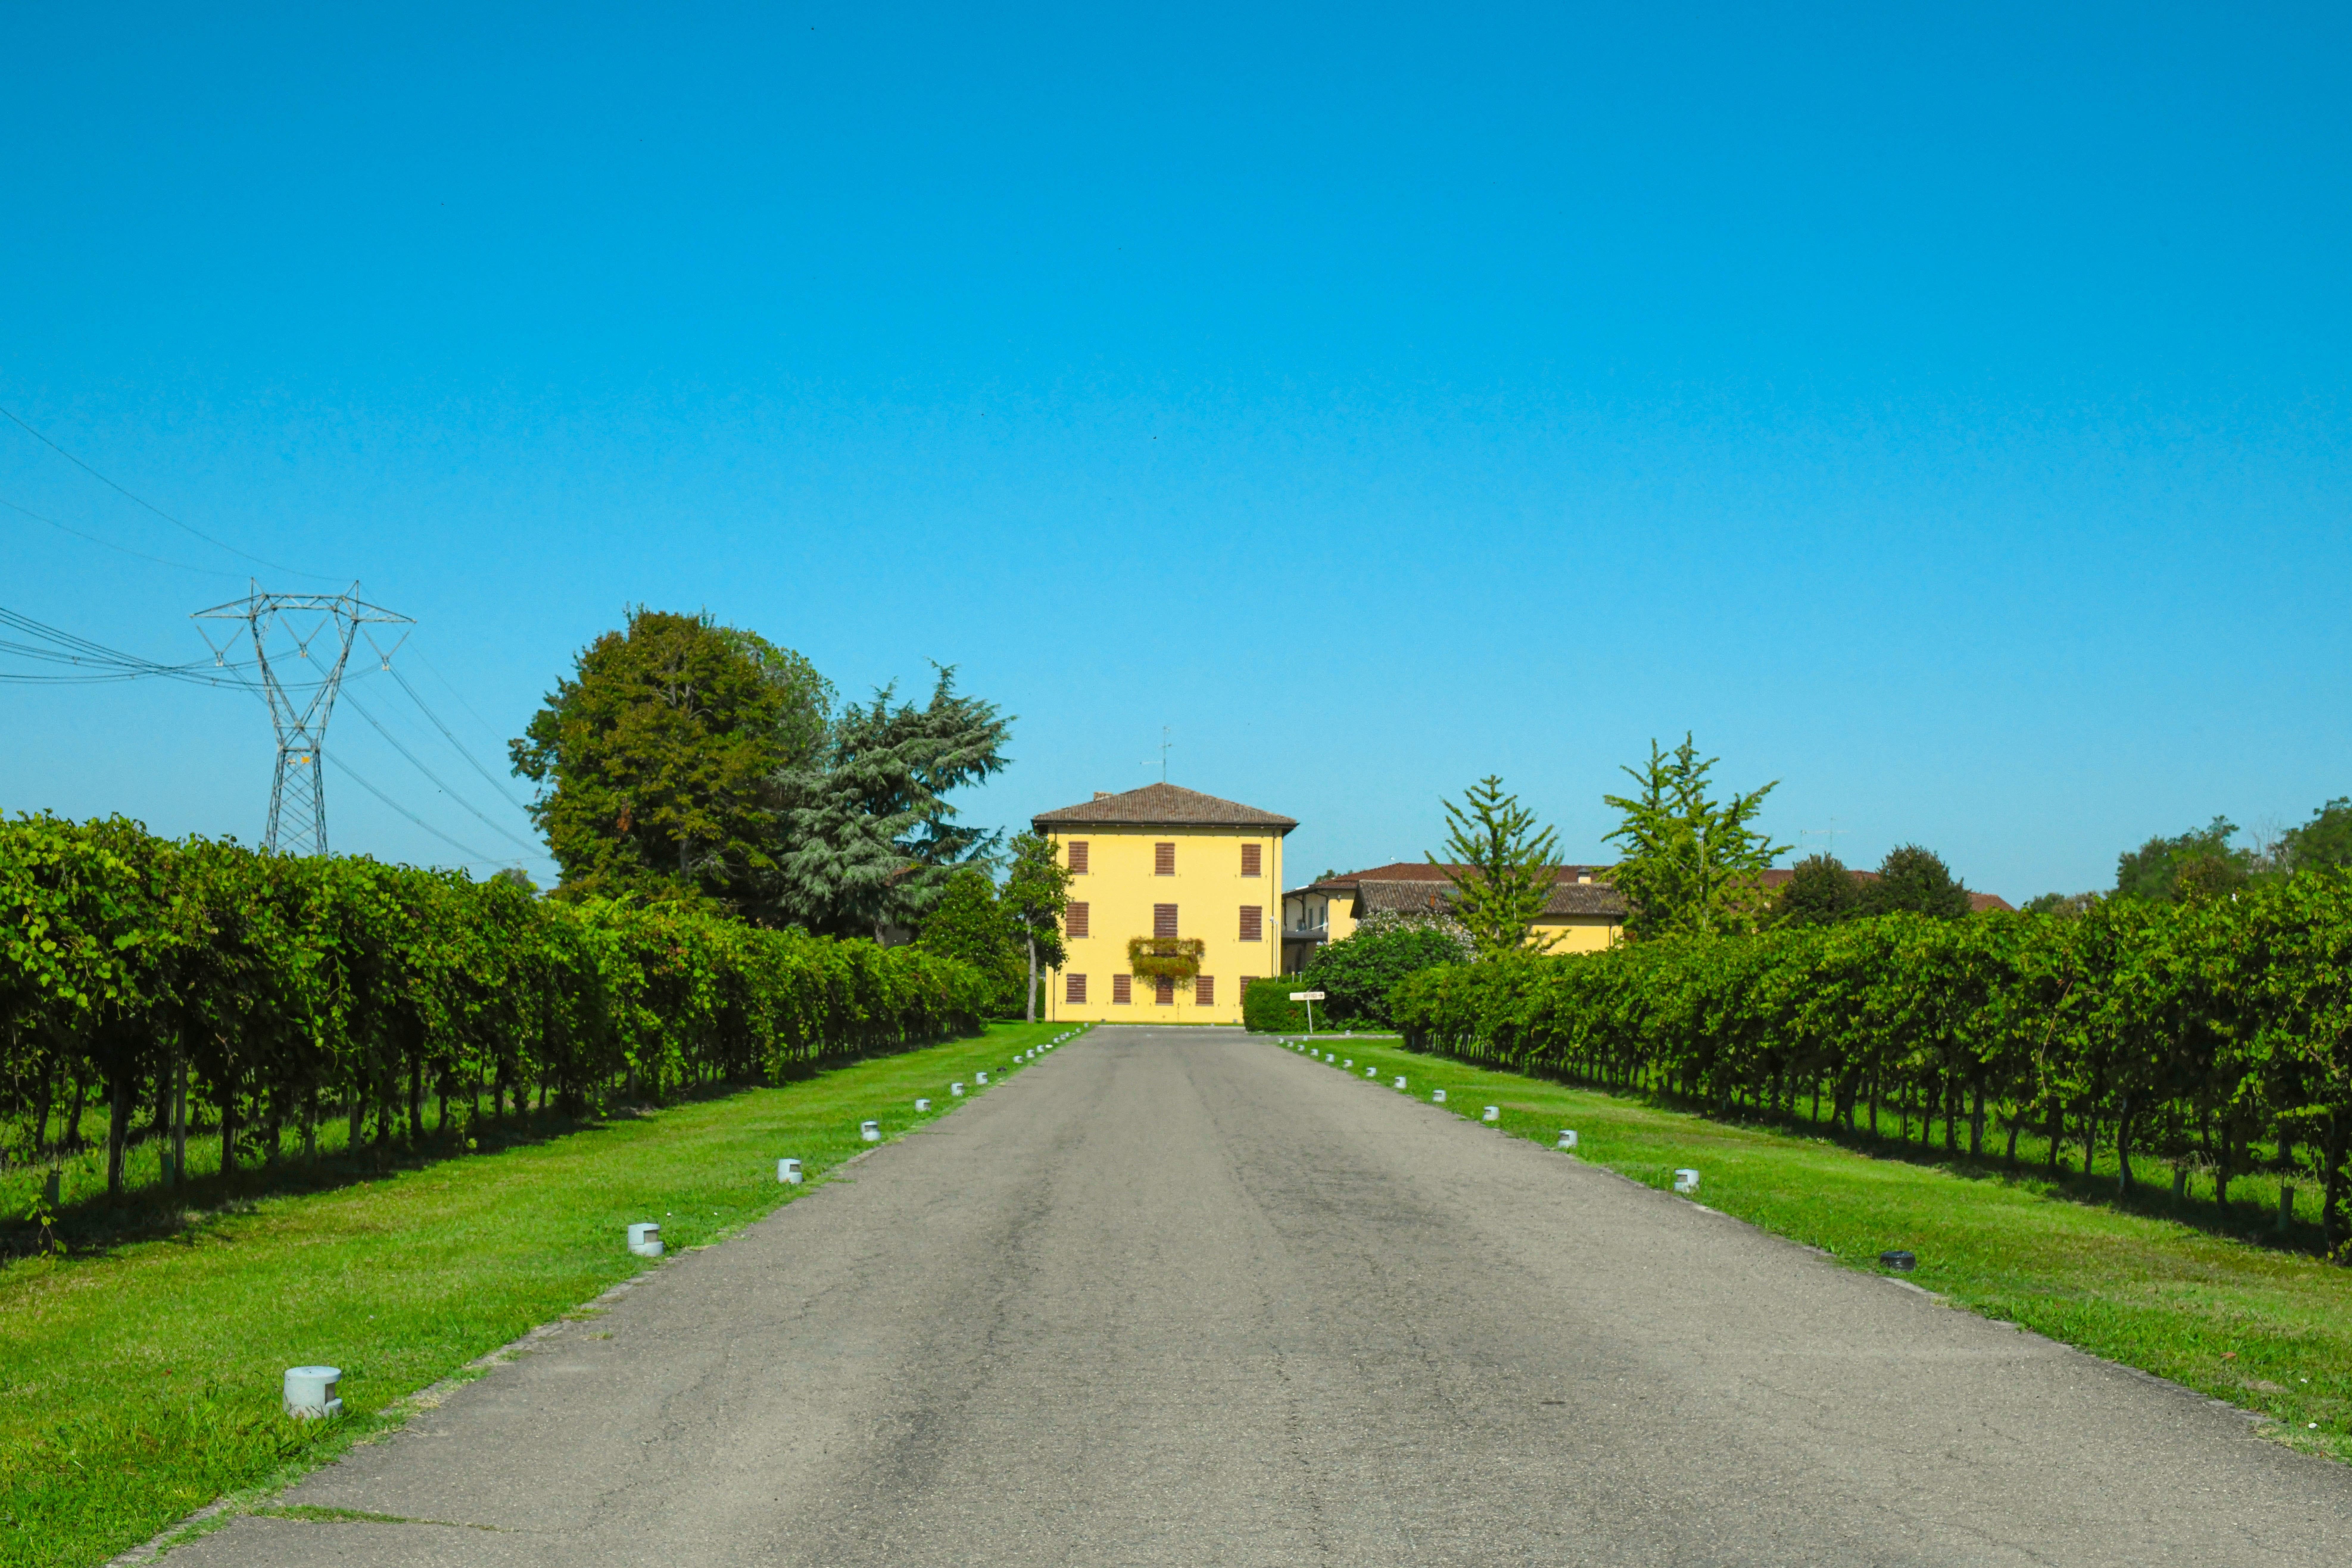 La casa gialla di campagna in mezzo alle viti di lambrusco, l'iconico simbolo dell'acetaia Giuseppe Cremonini